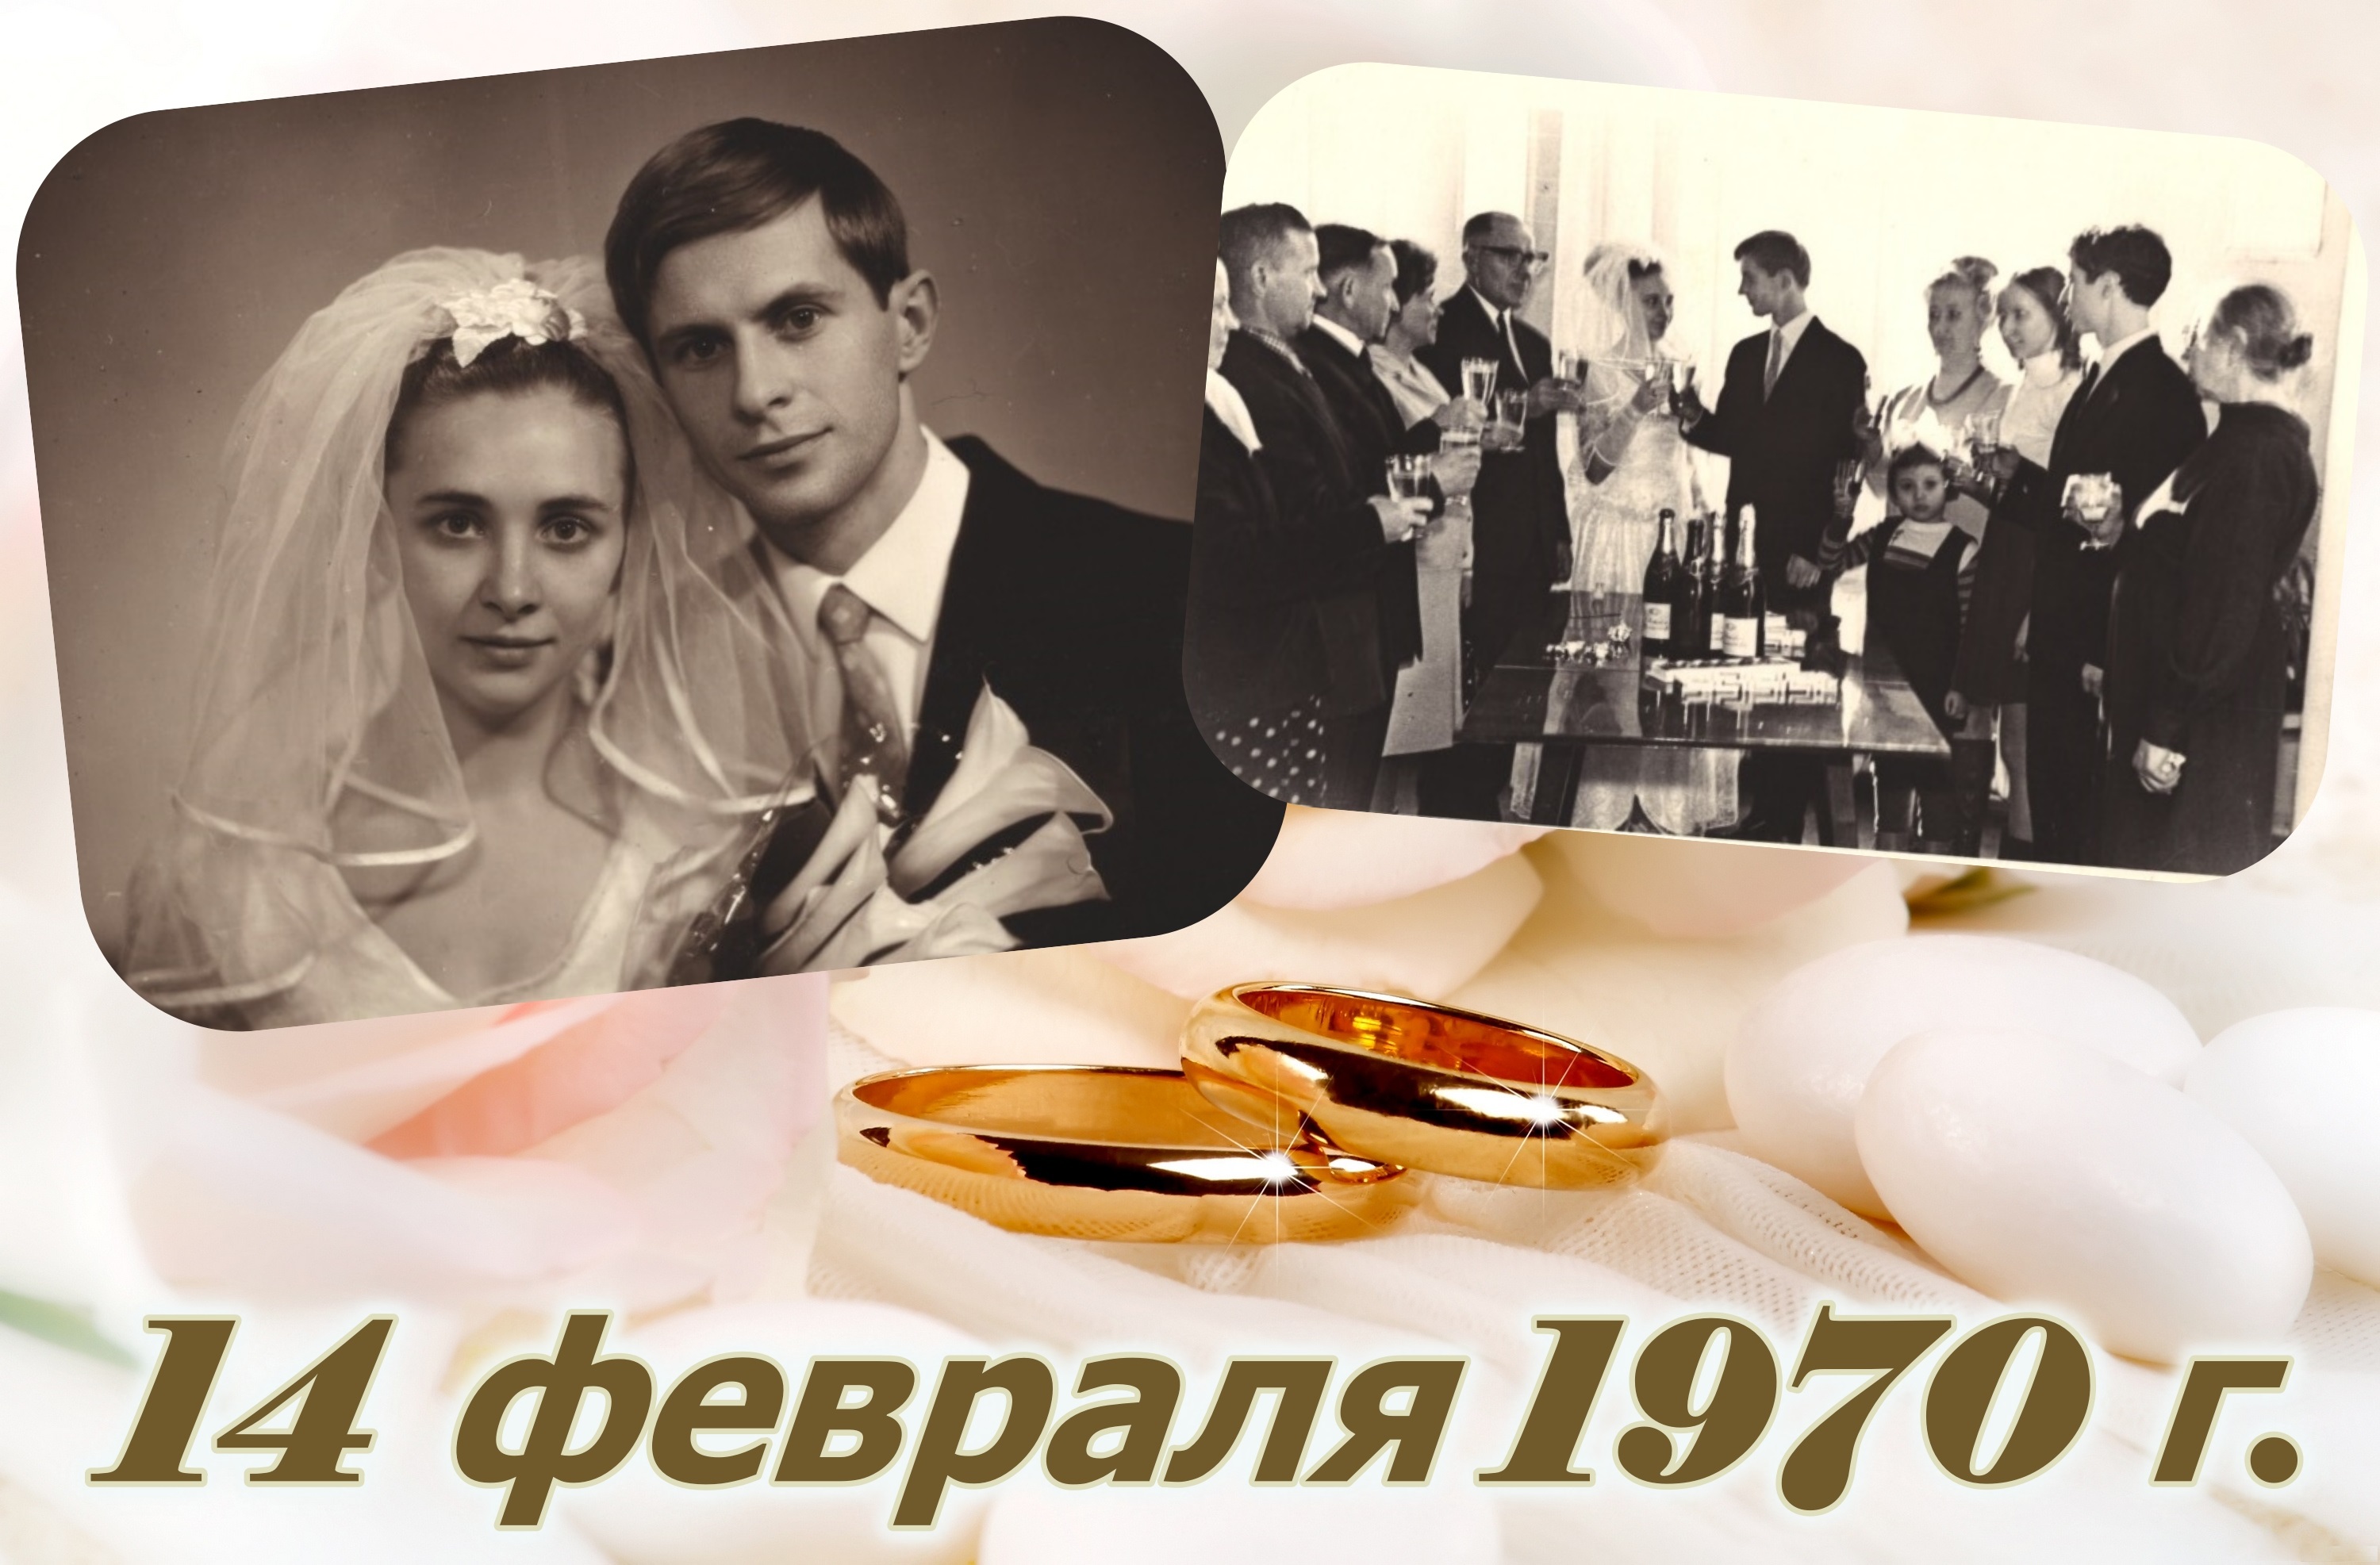 Поженившись 14 февраля, супруги Лупишко живут в браке 50 лет